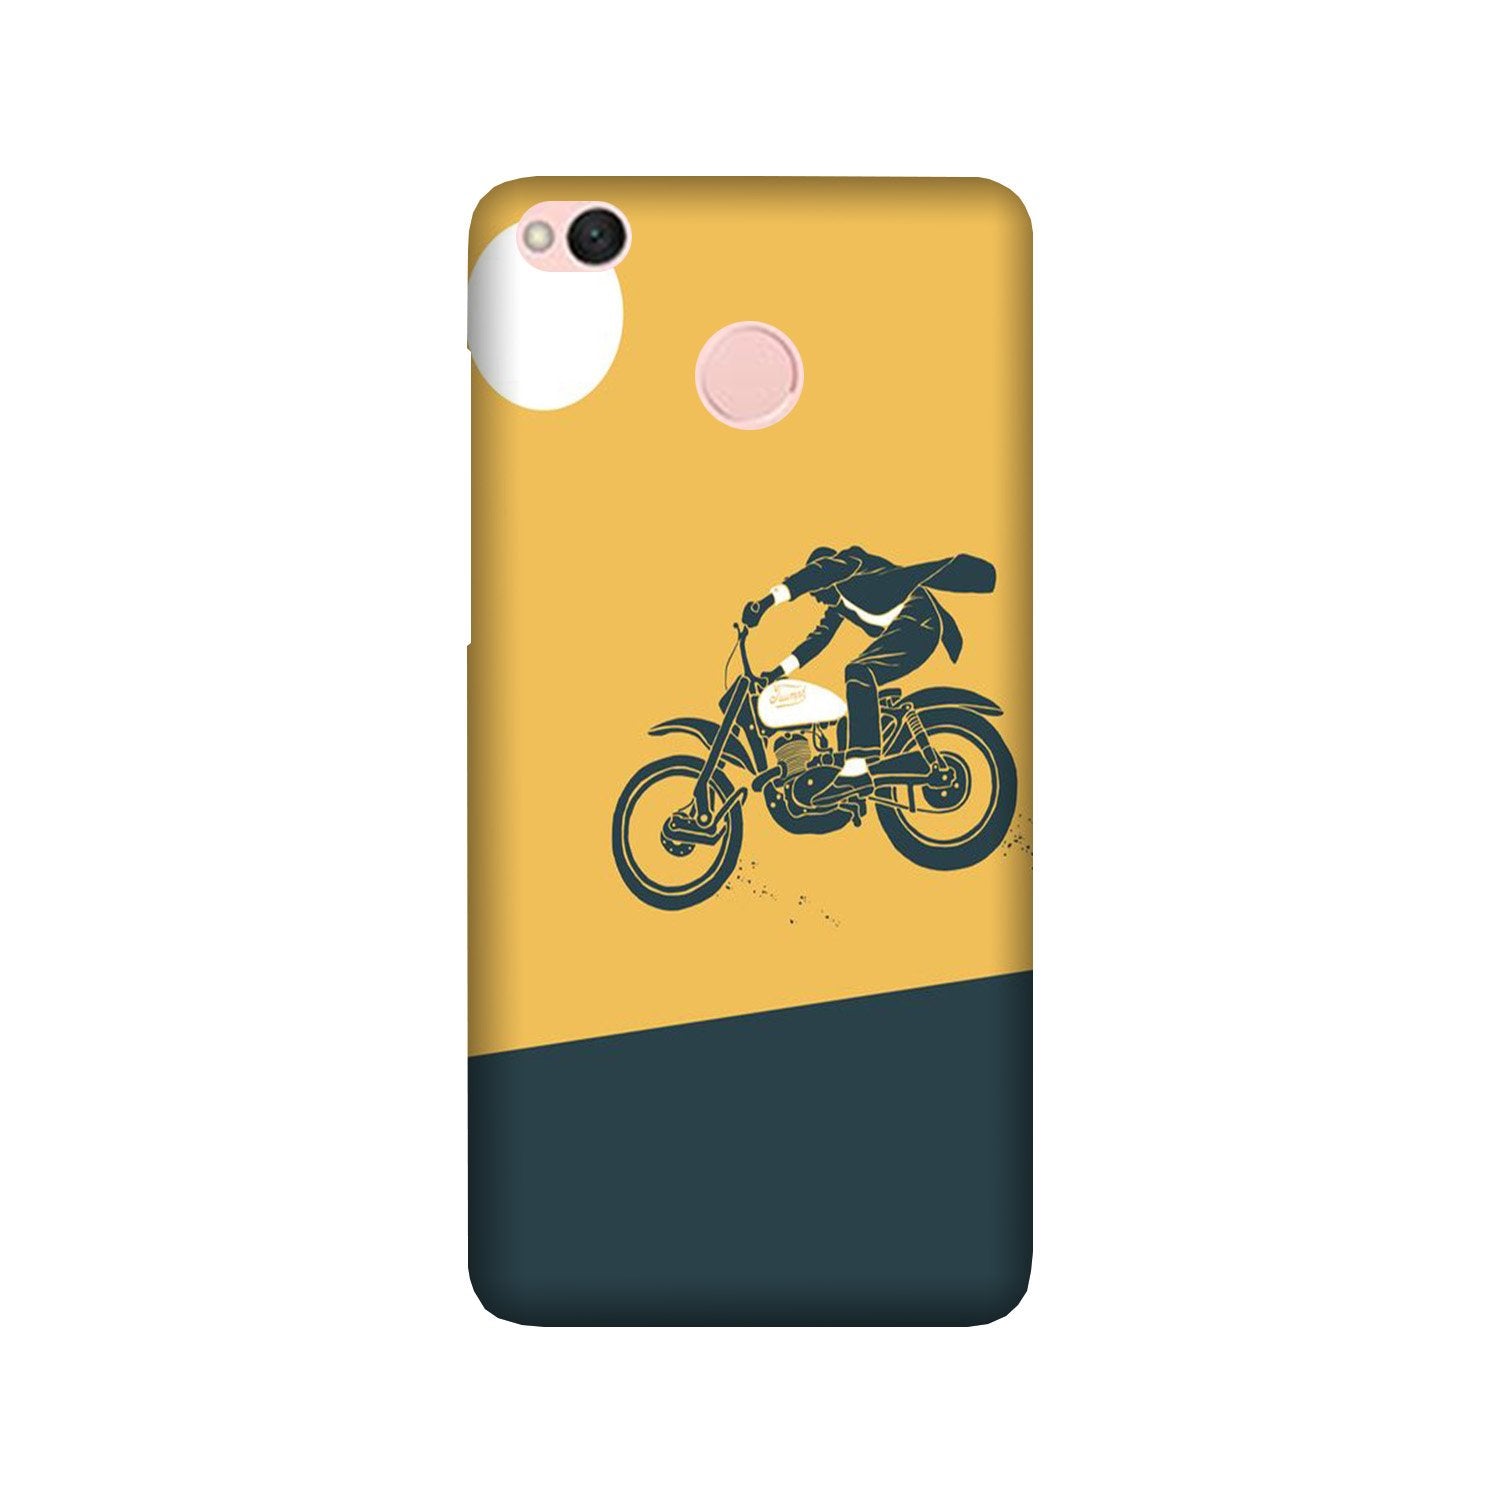 Bike Lovers Case for Redmi 4 (Design No. 256)